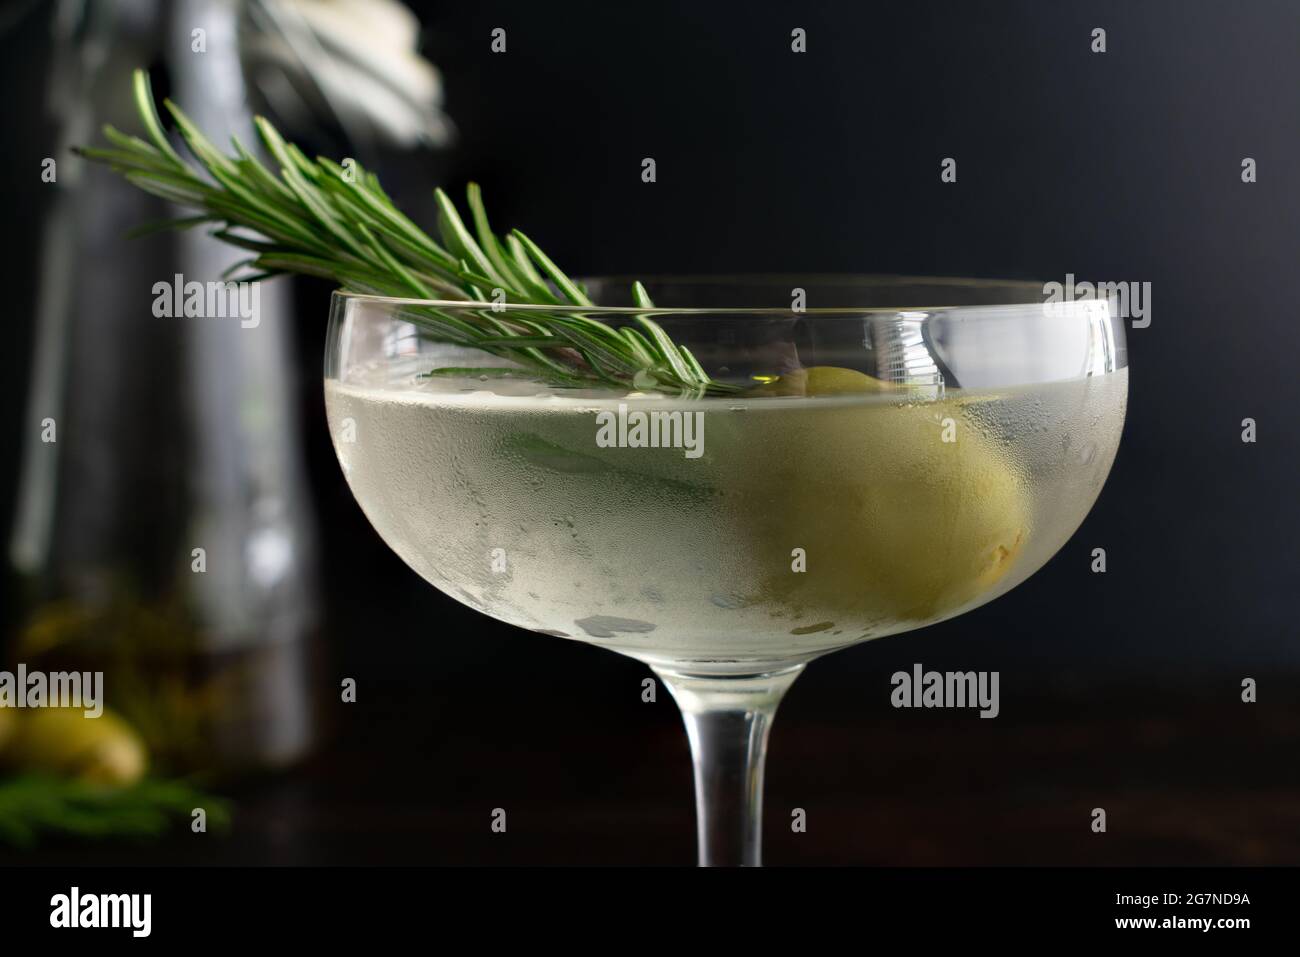 Aceite de romero ahumado Martini sucio: Un martini de ginebra sucio servido en un vaso coupé y adornado con una ramita de romero en una oliva verde Foto de stock